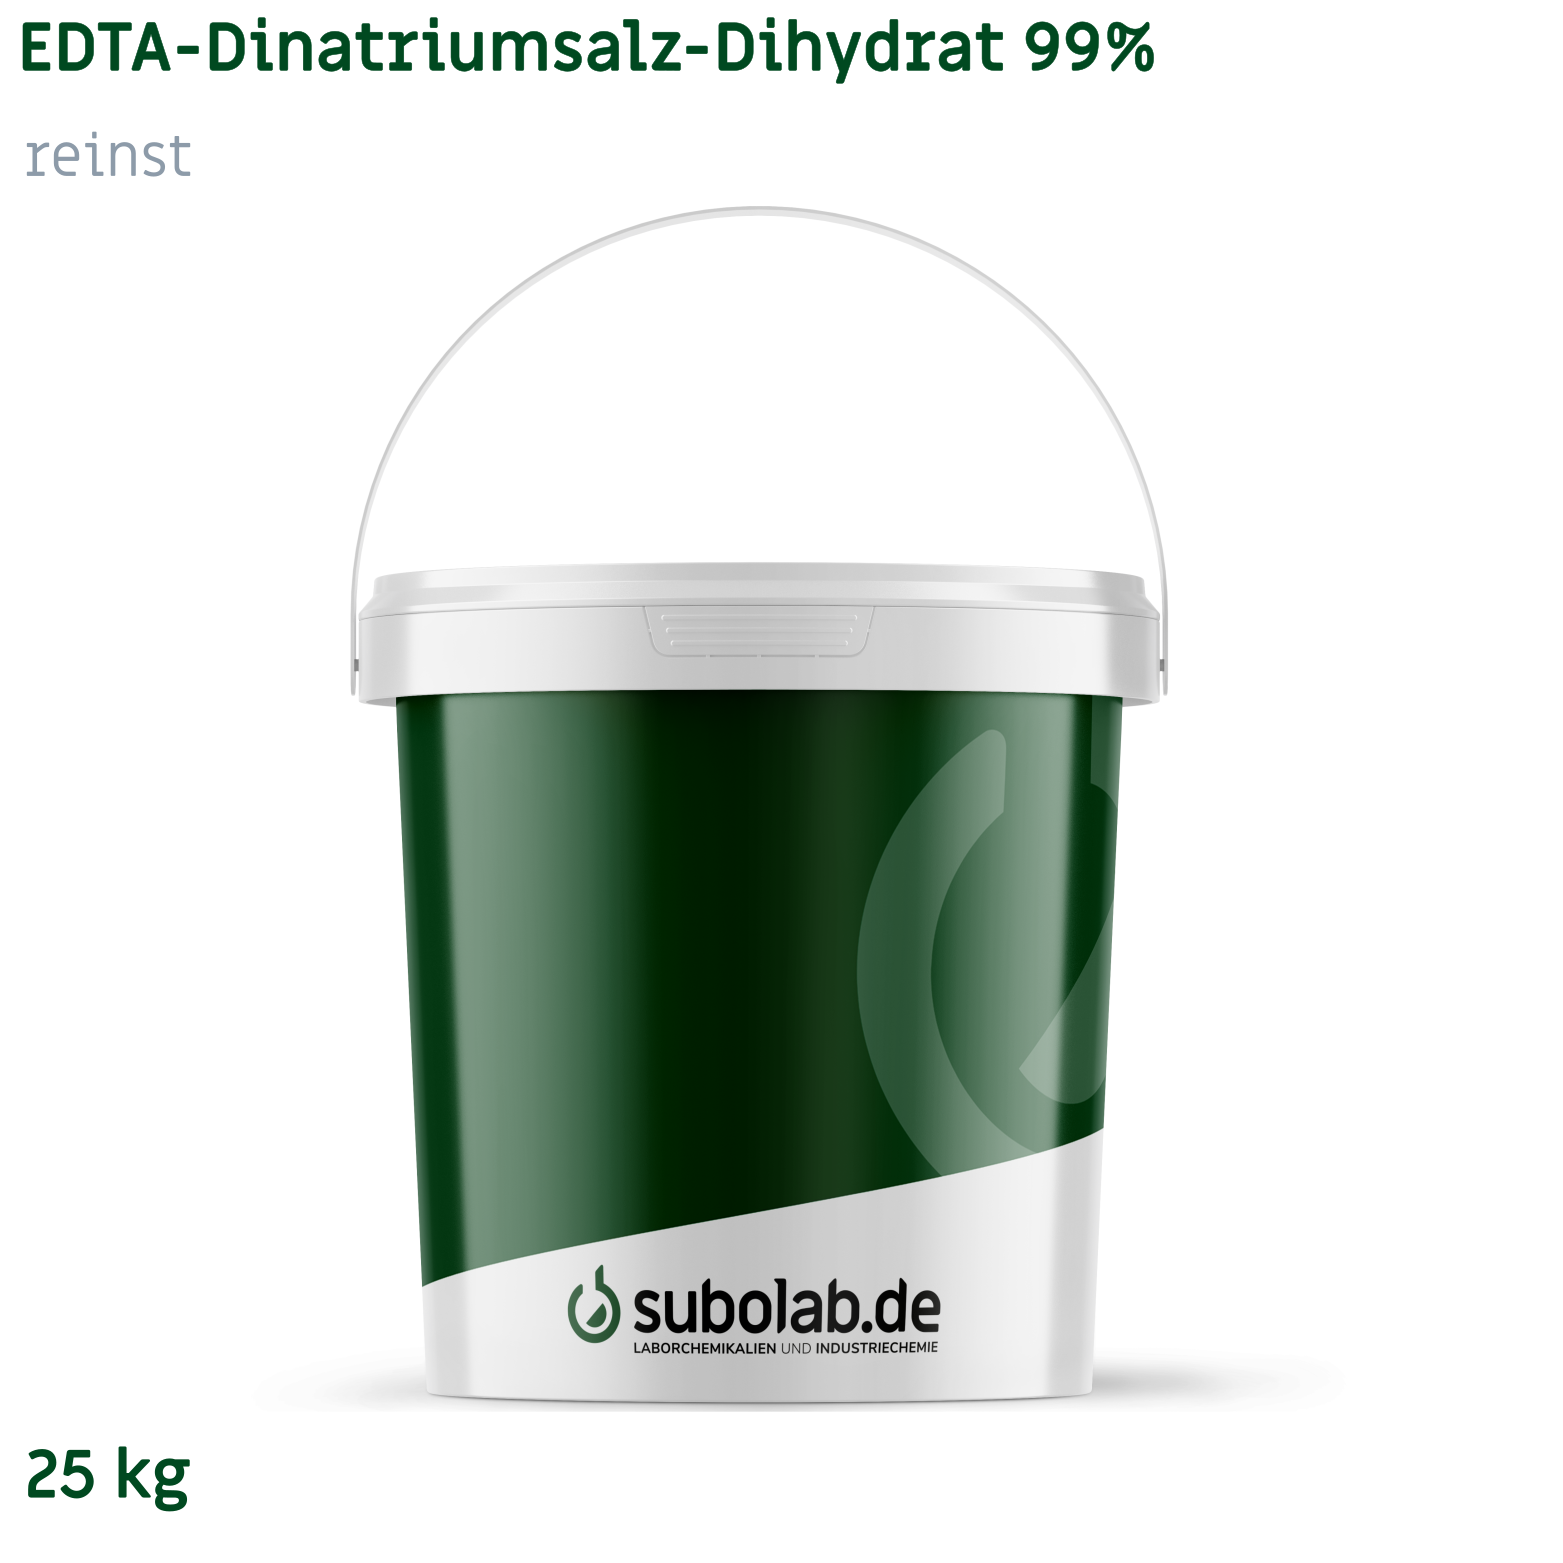 Bild von EDTA - Dinatriumsalz - Dihydrat 99% reinst (25 kg)